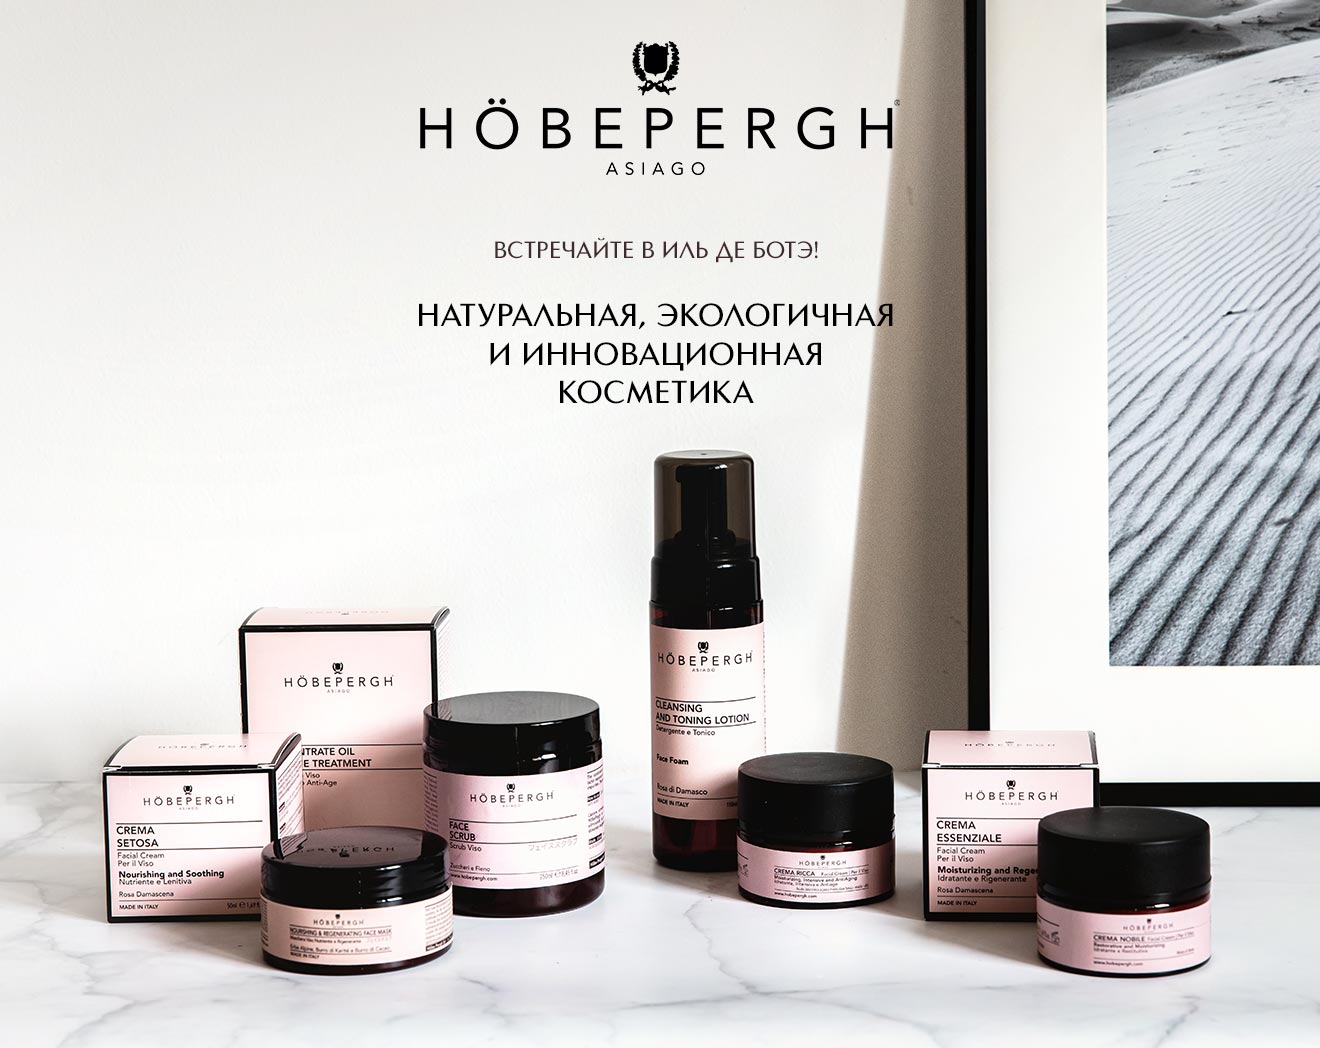 Встречайте новый бренд HÖBE PERGH в ИЛЬ ДЕ БОТЭ!